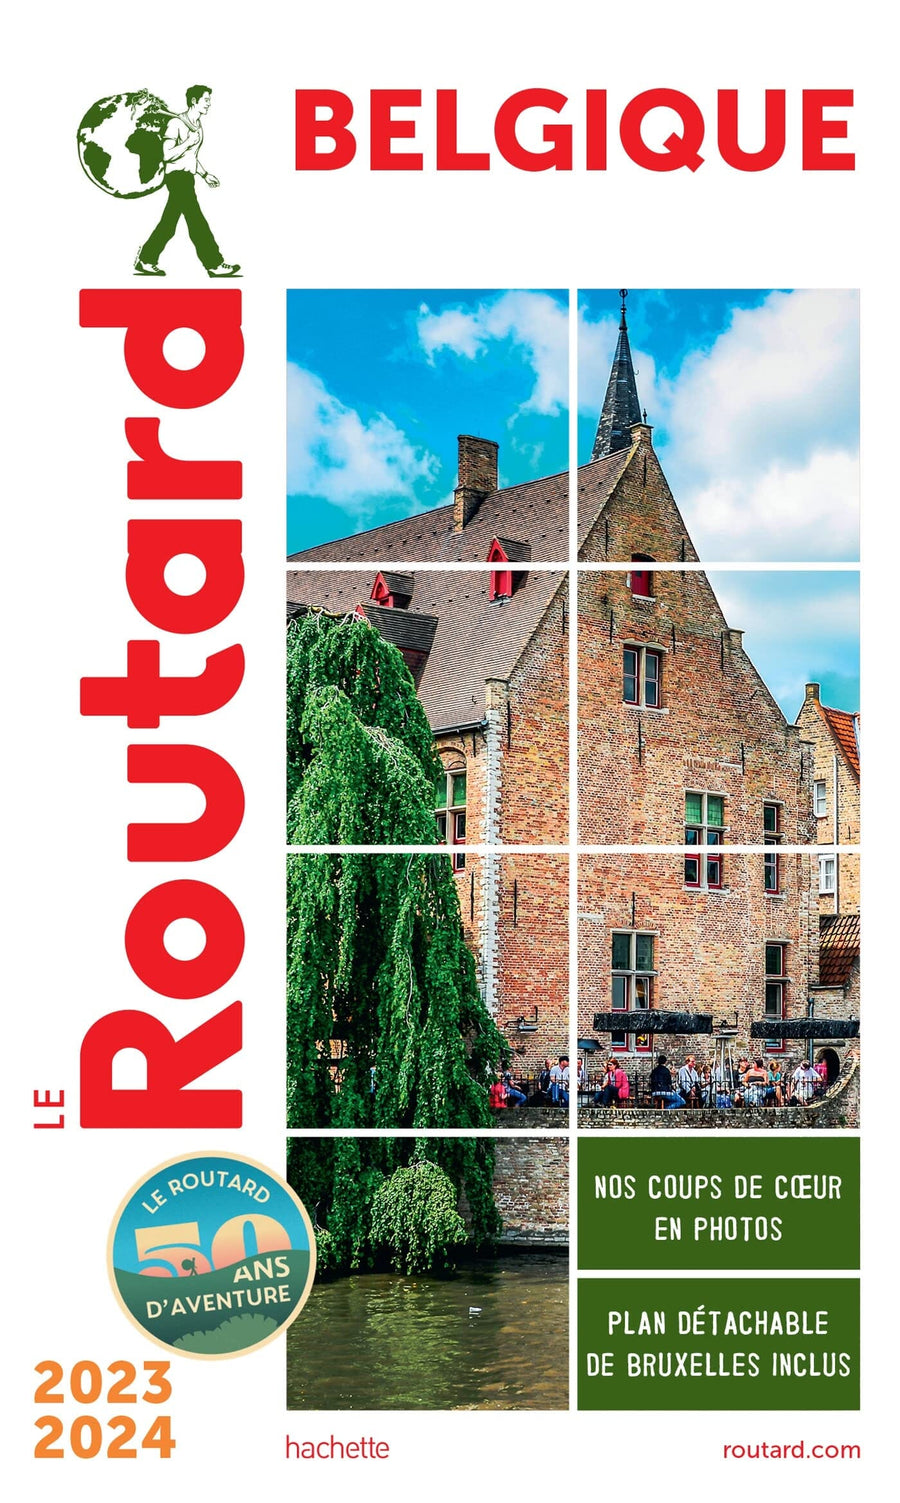 Guide du Routard - Belgique 2023/24 | Hachette guide de voyage Hachette 